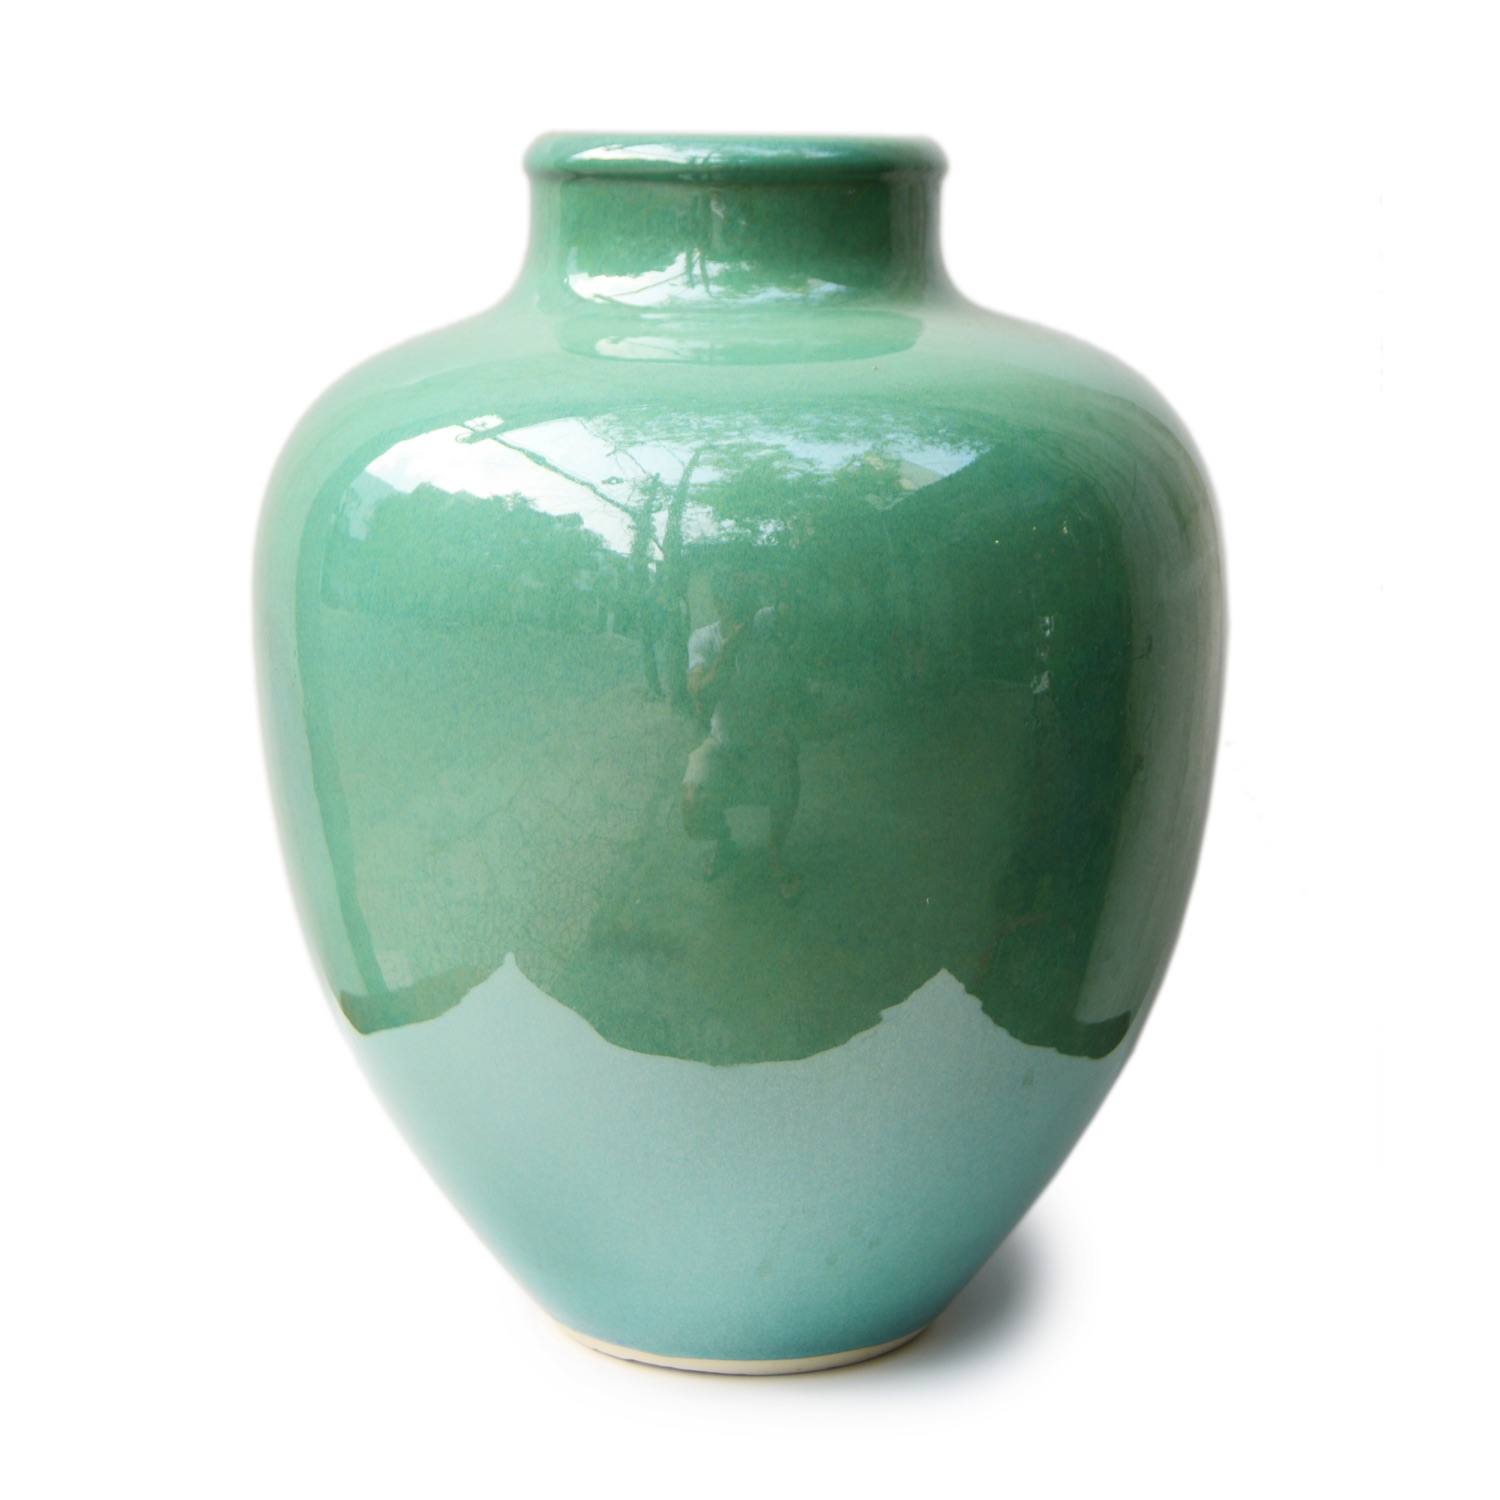 Novelty vase